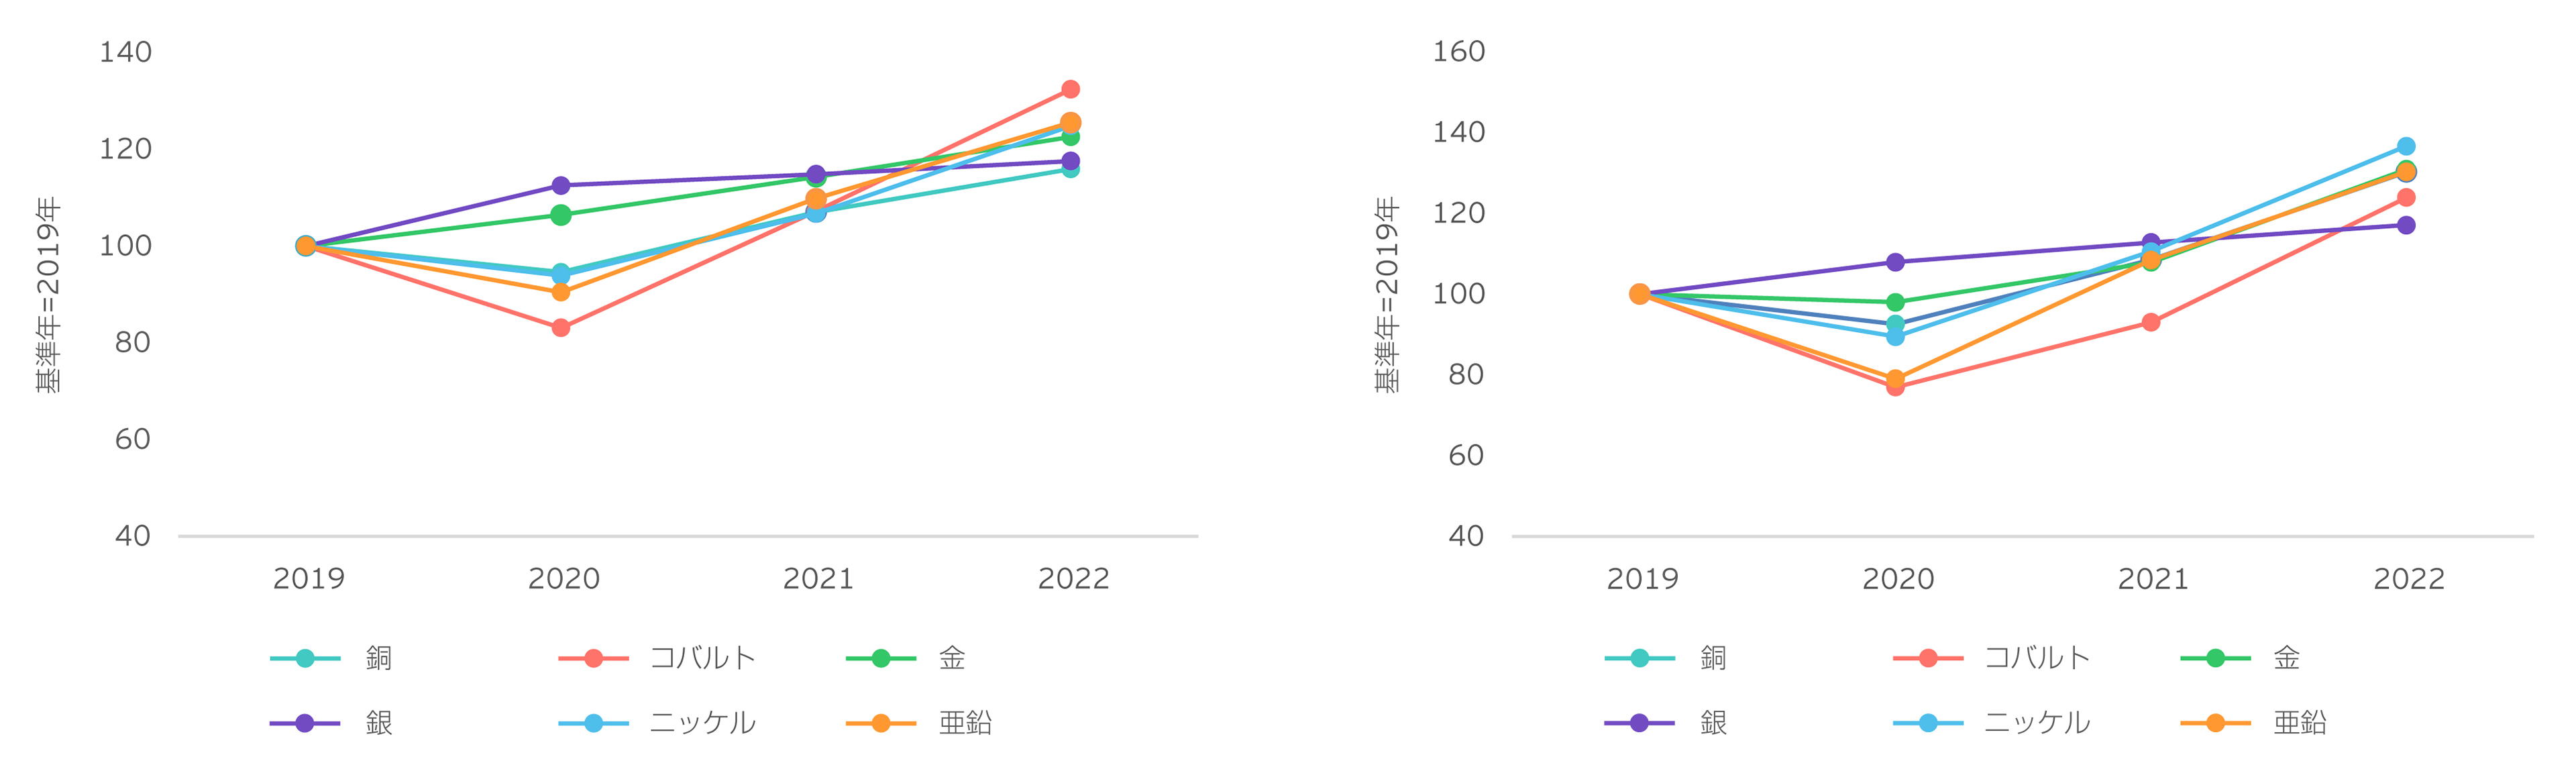 人件費とエネルギーコスト - Index 100（基準年） = 2019の結果をまとめたグラフ